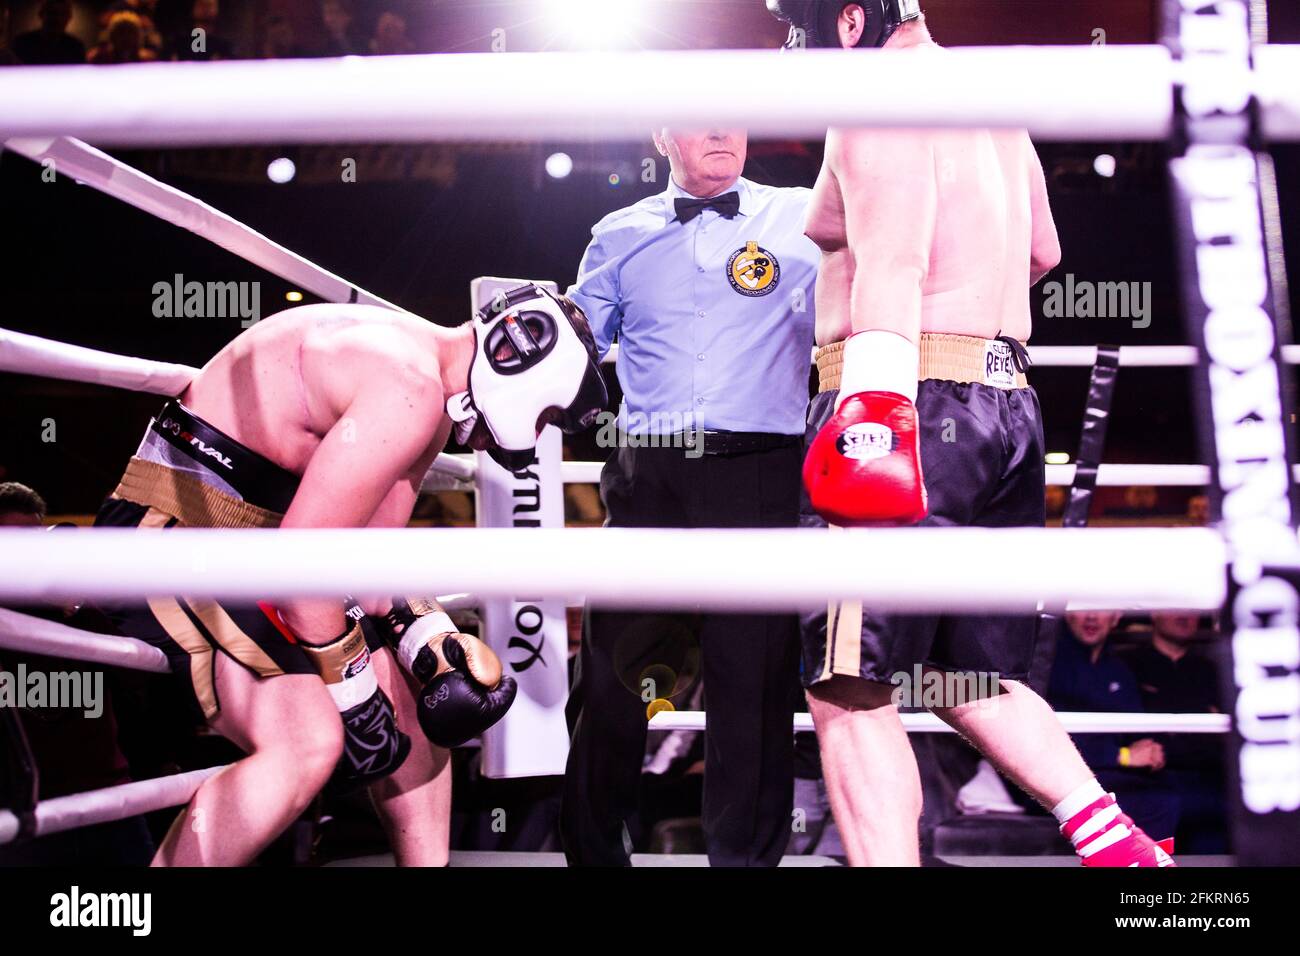 L'arbitre de boxe arrête le combat alors que l'un des boxeurs descend après un gros coup de poing, en ragoutant l'air dans la douleur pendant l'événement White collets en liberté Banque D'Images